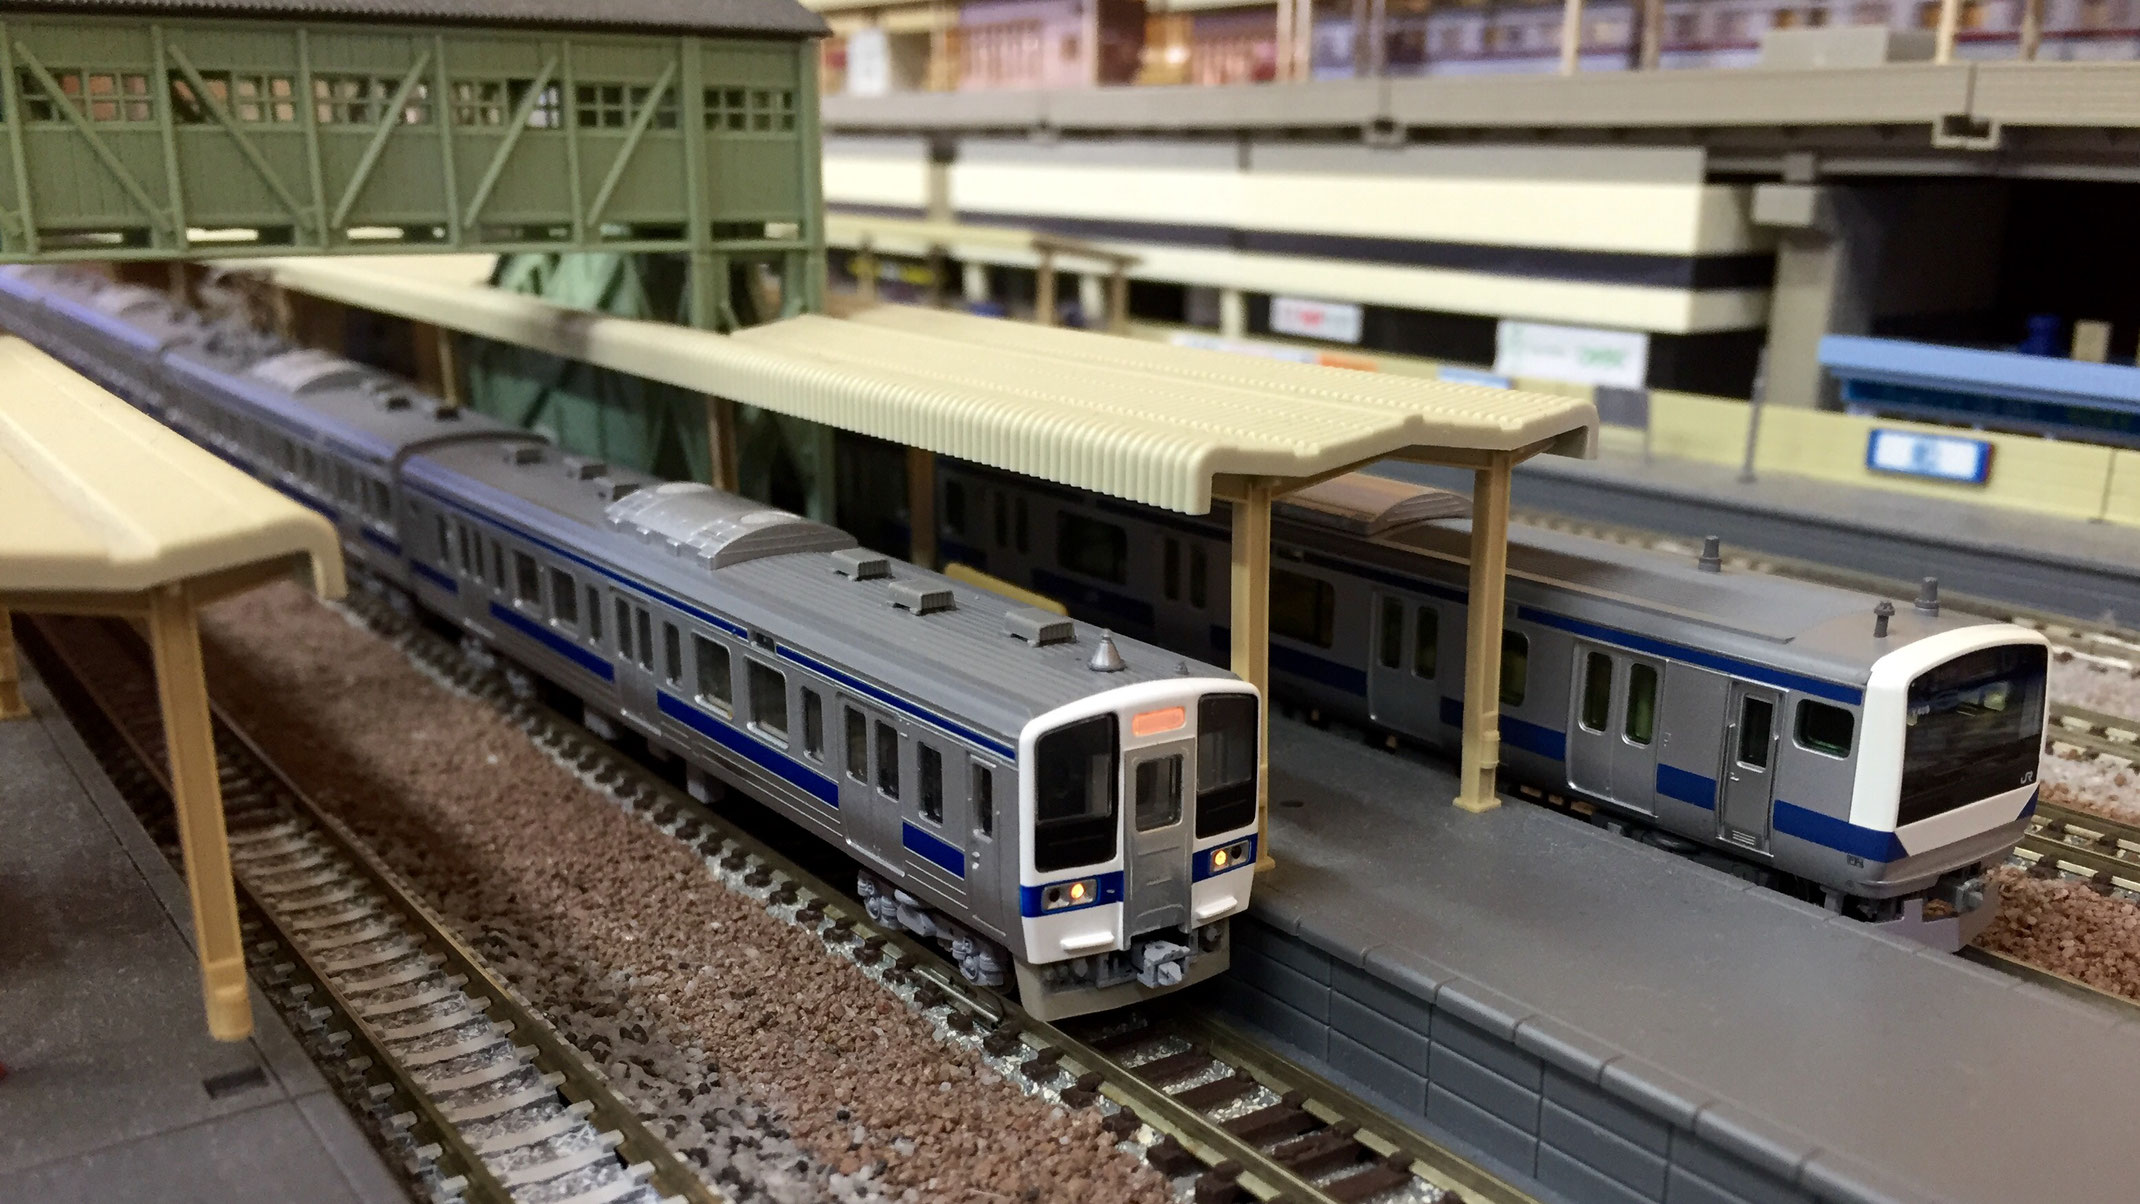 «品»【TOMIX 92582】JR415系1500番台 近郊電車 4両